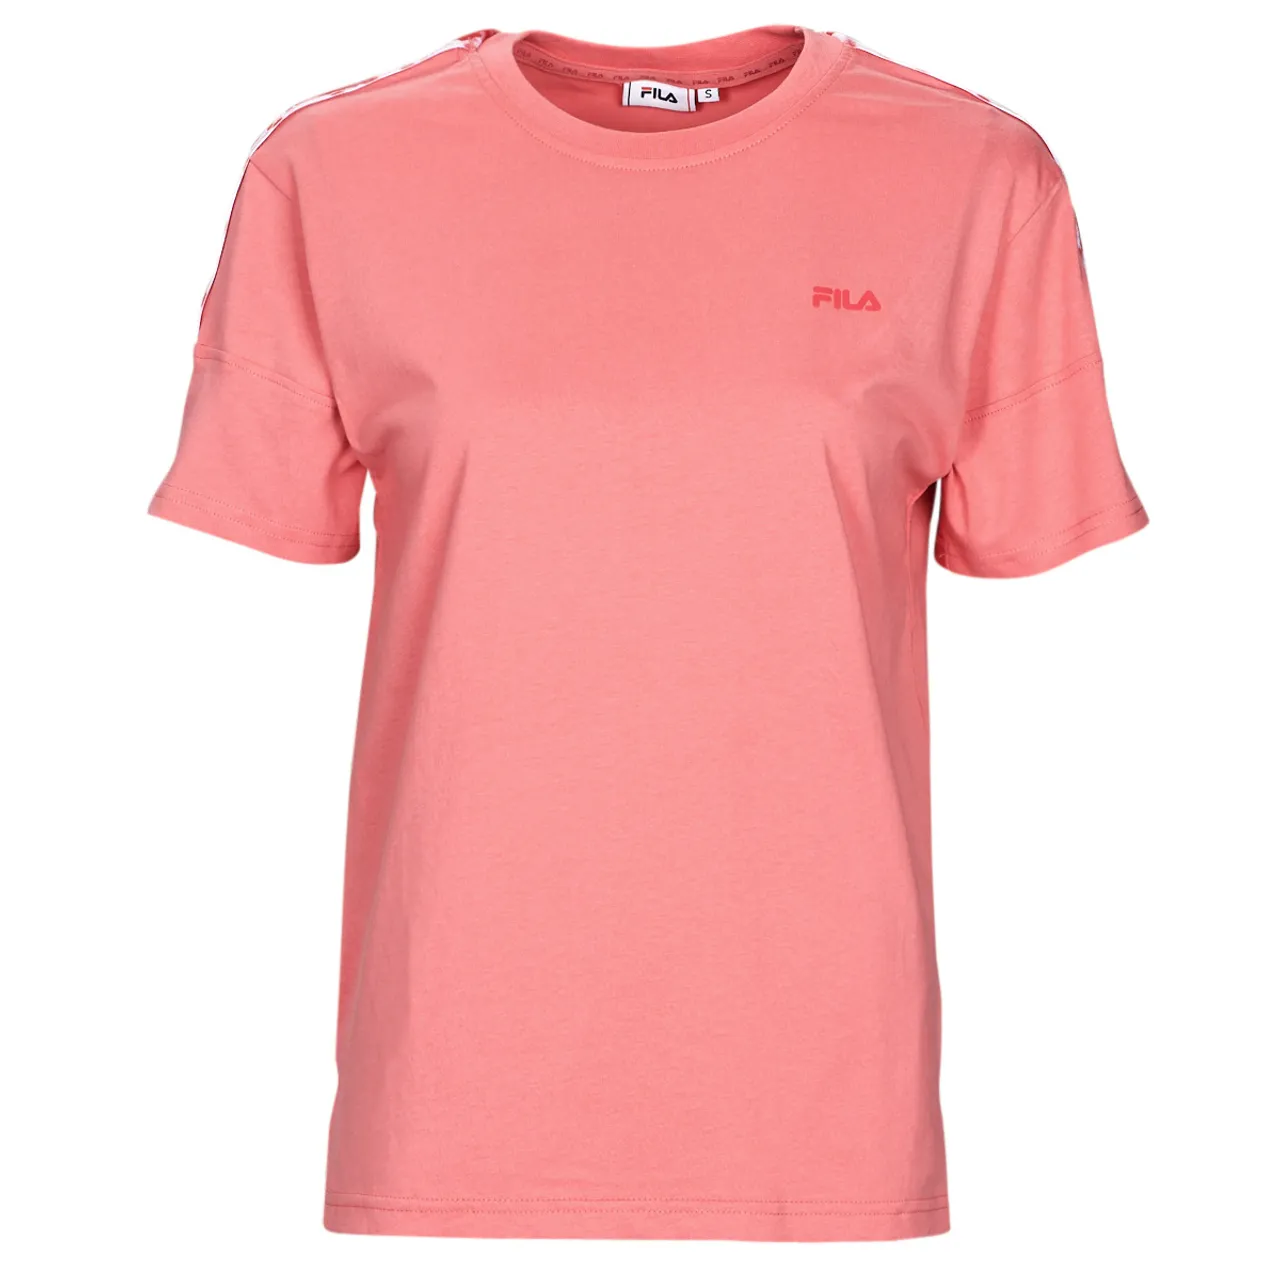 Fila  BONFOL  women's T shirt in Pink